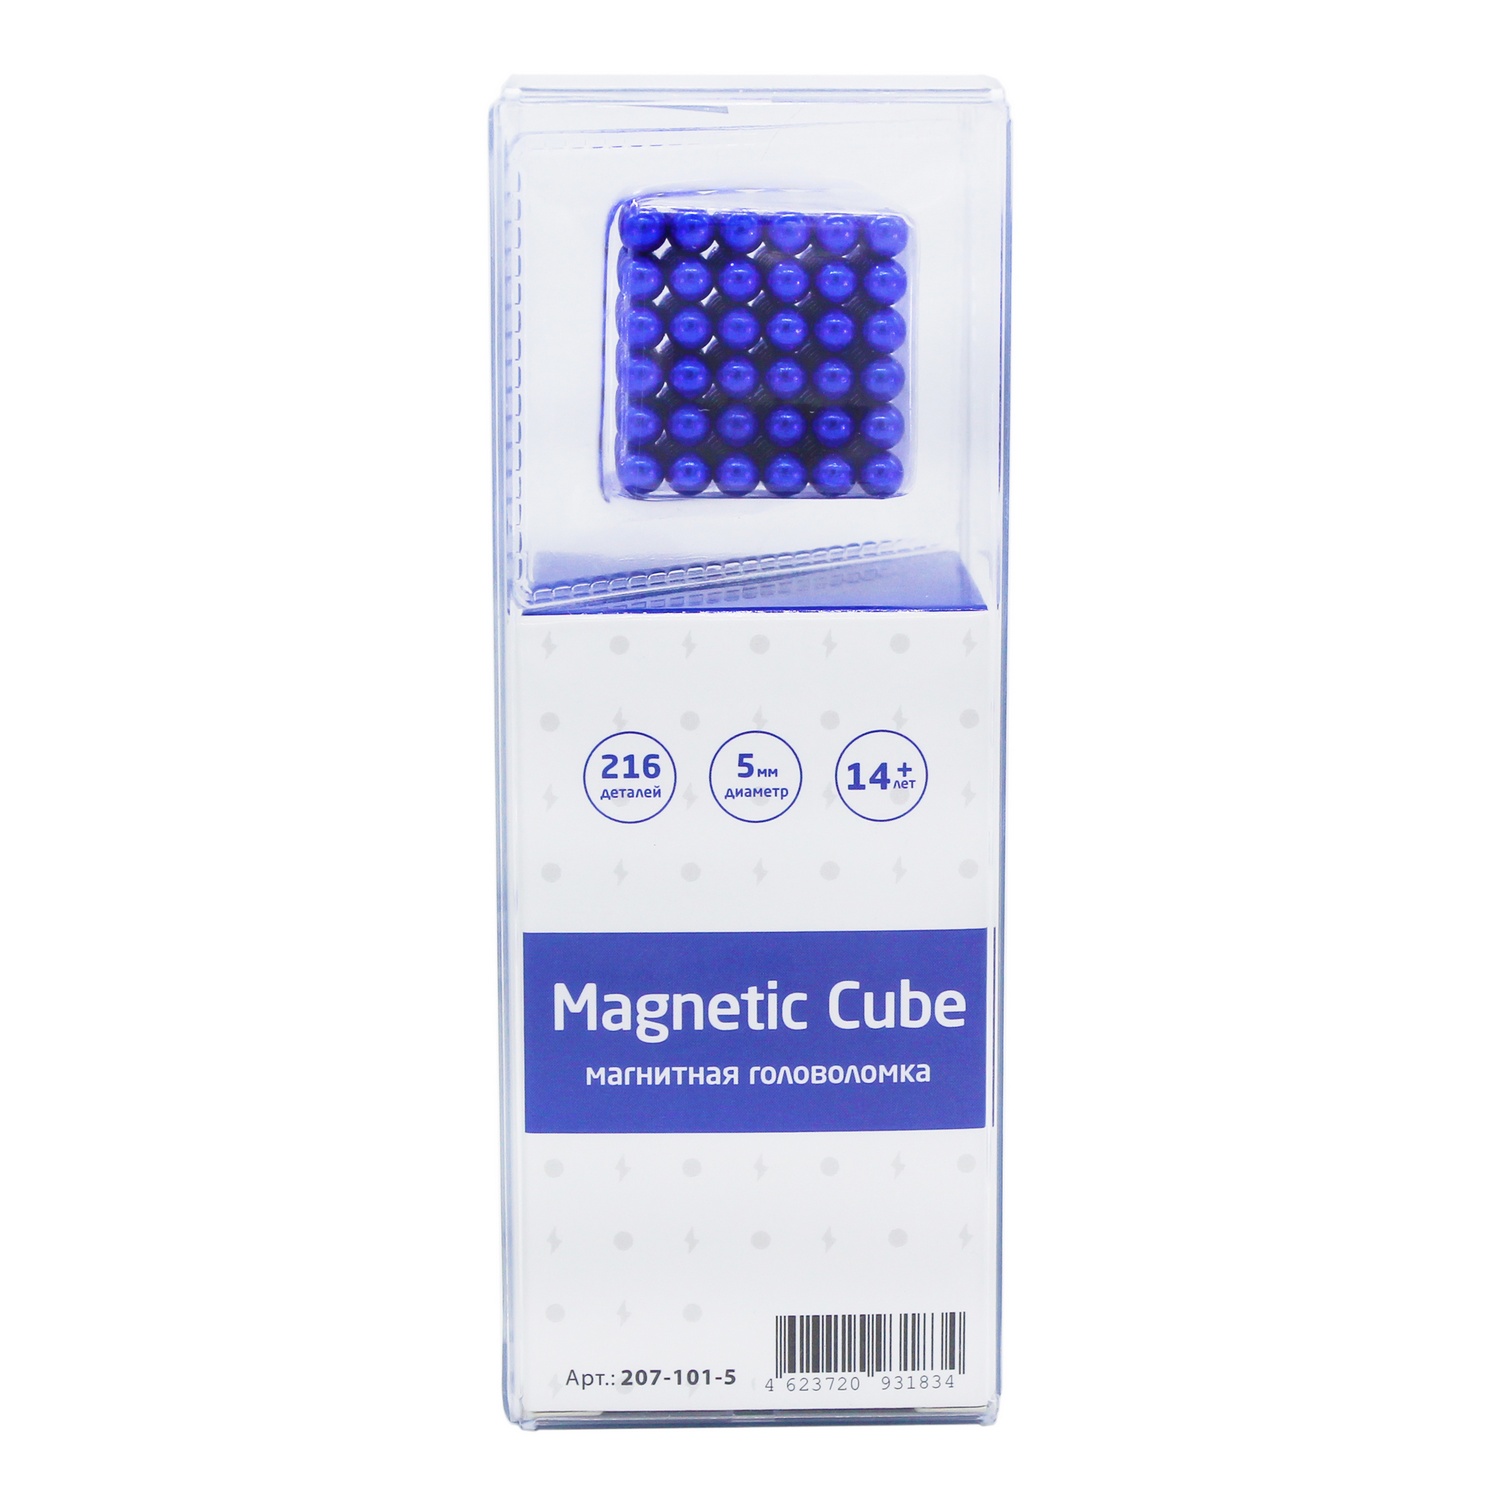 Головоломка магнитная Magnetic Cube синий неокуб 216 элементов - фото 3